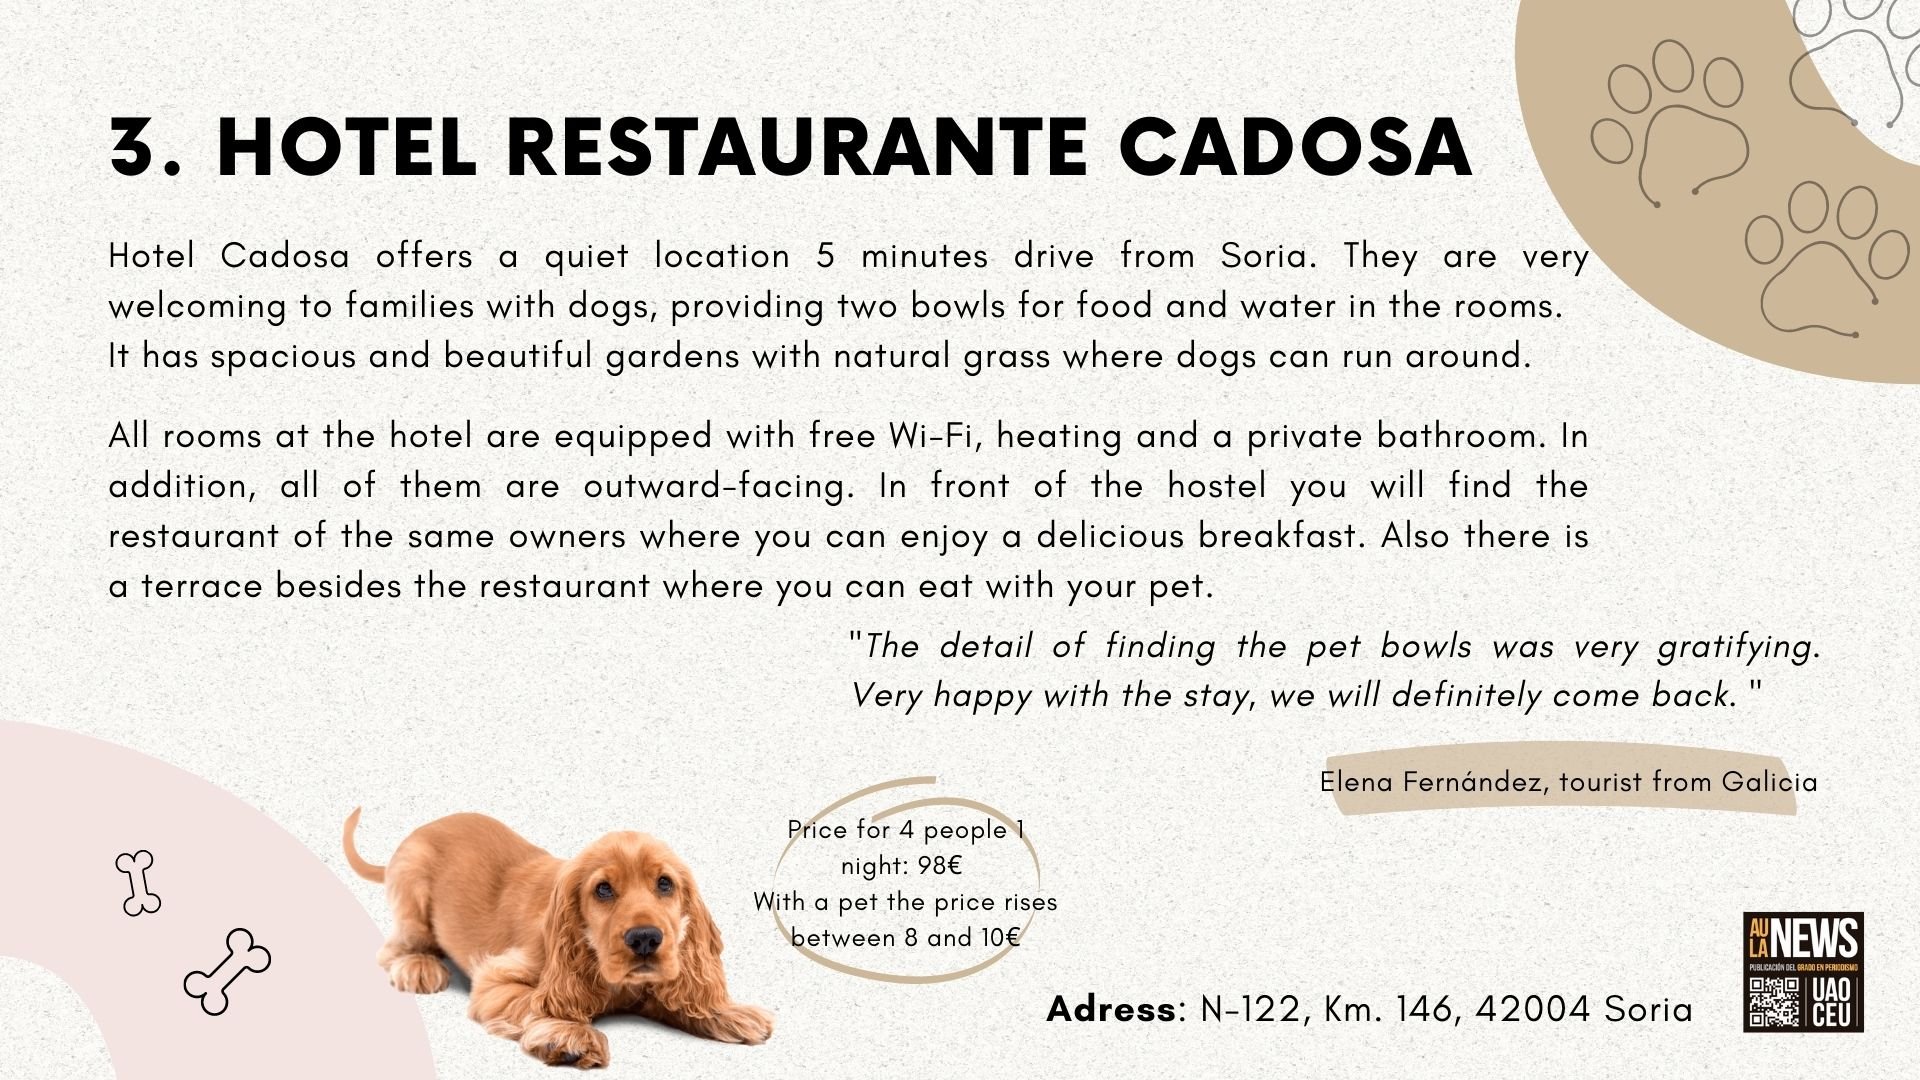 Hotel Restaurante Cadosa information / Victoria Población